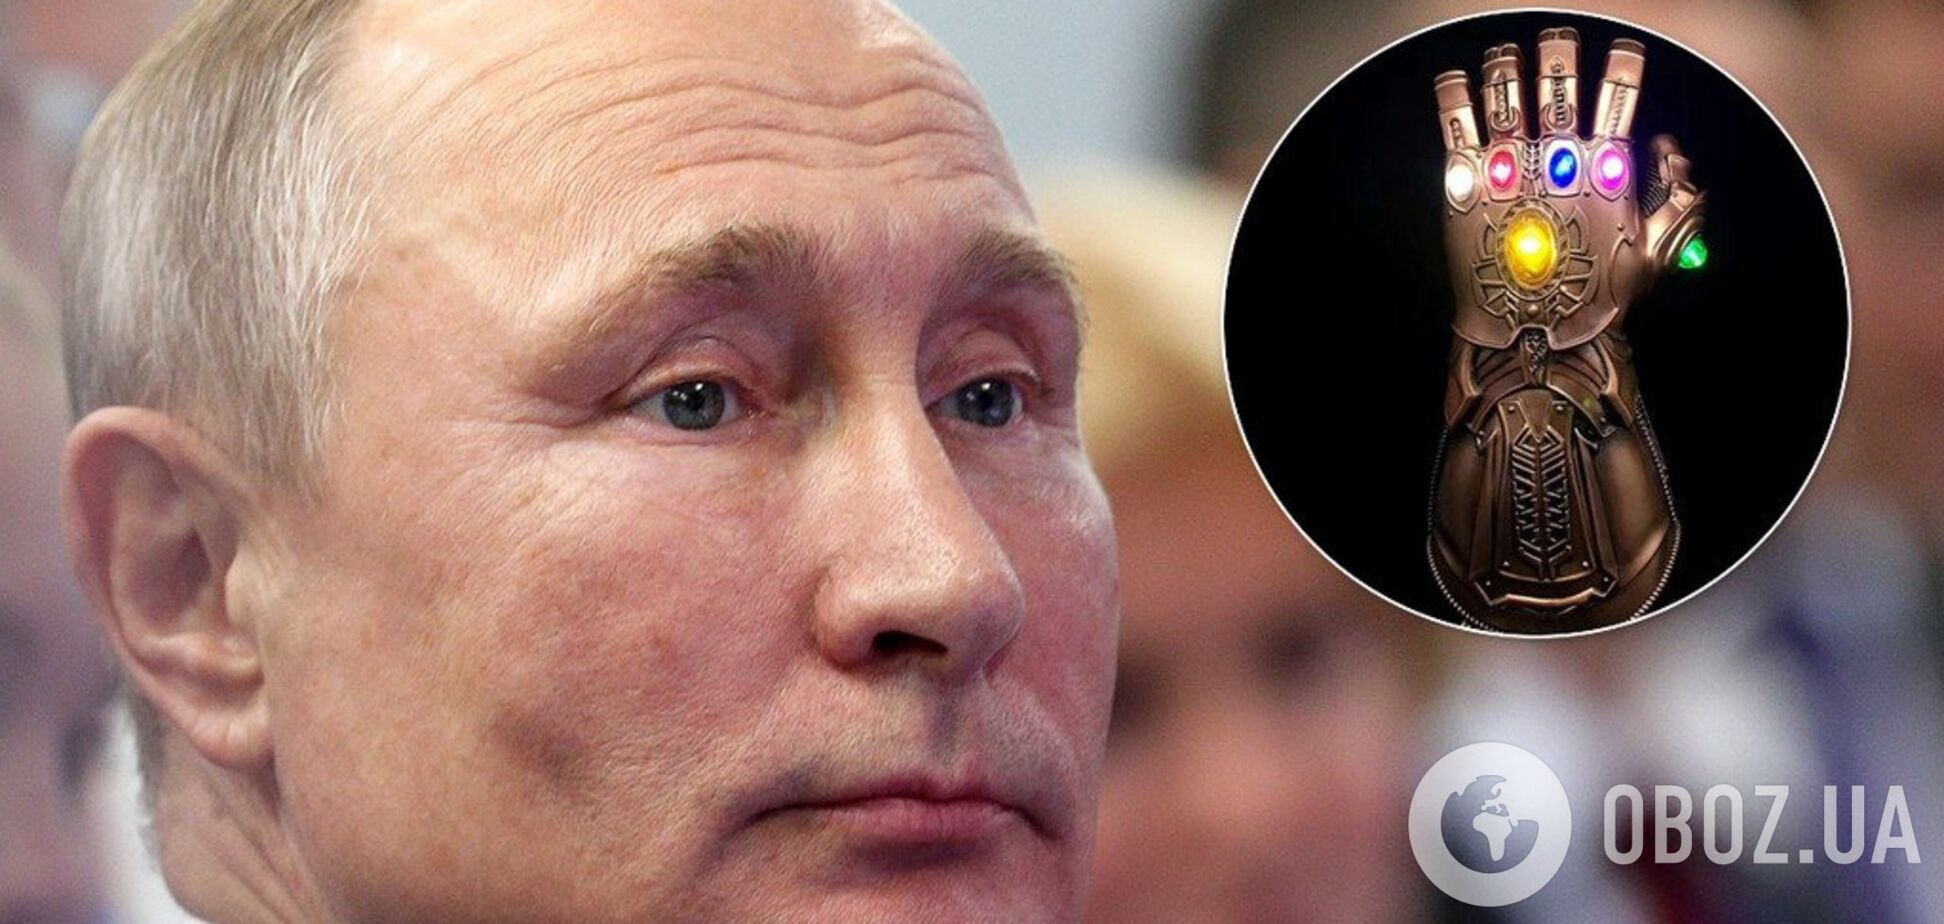 'Красавица': Путин получил необычный боксерский подарок